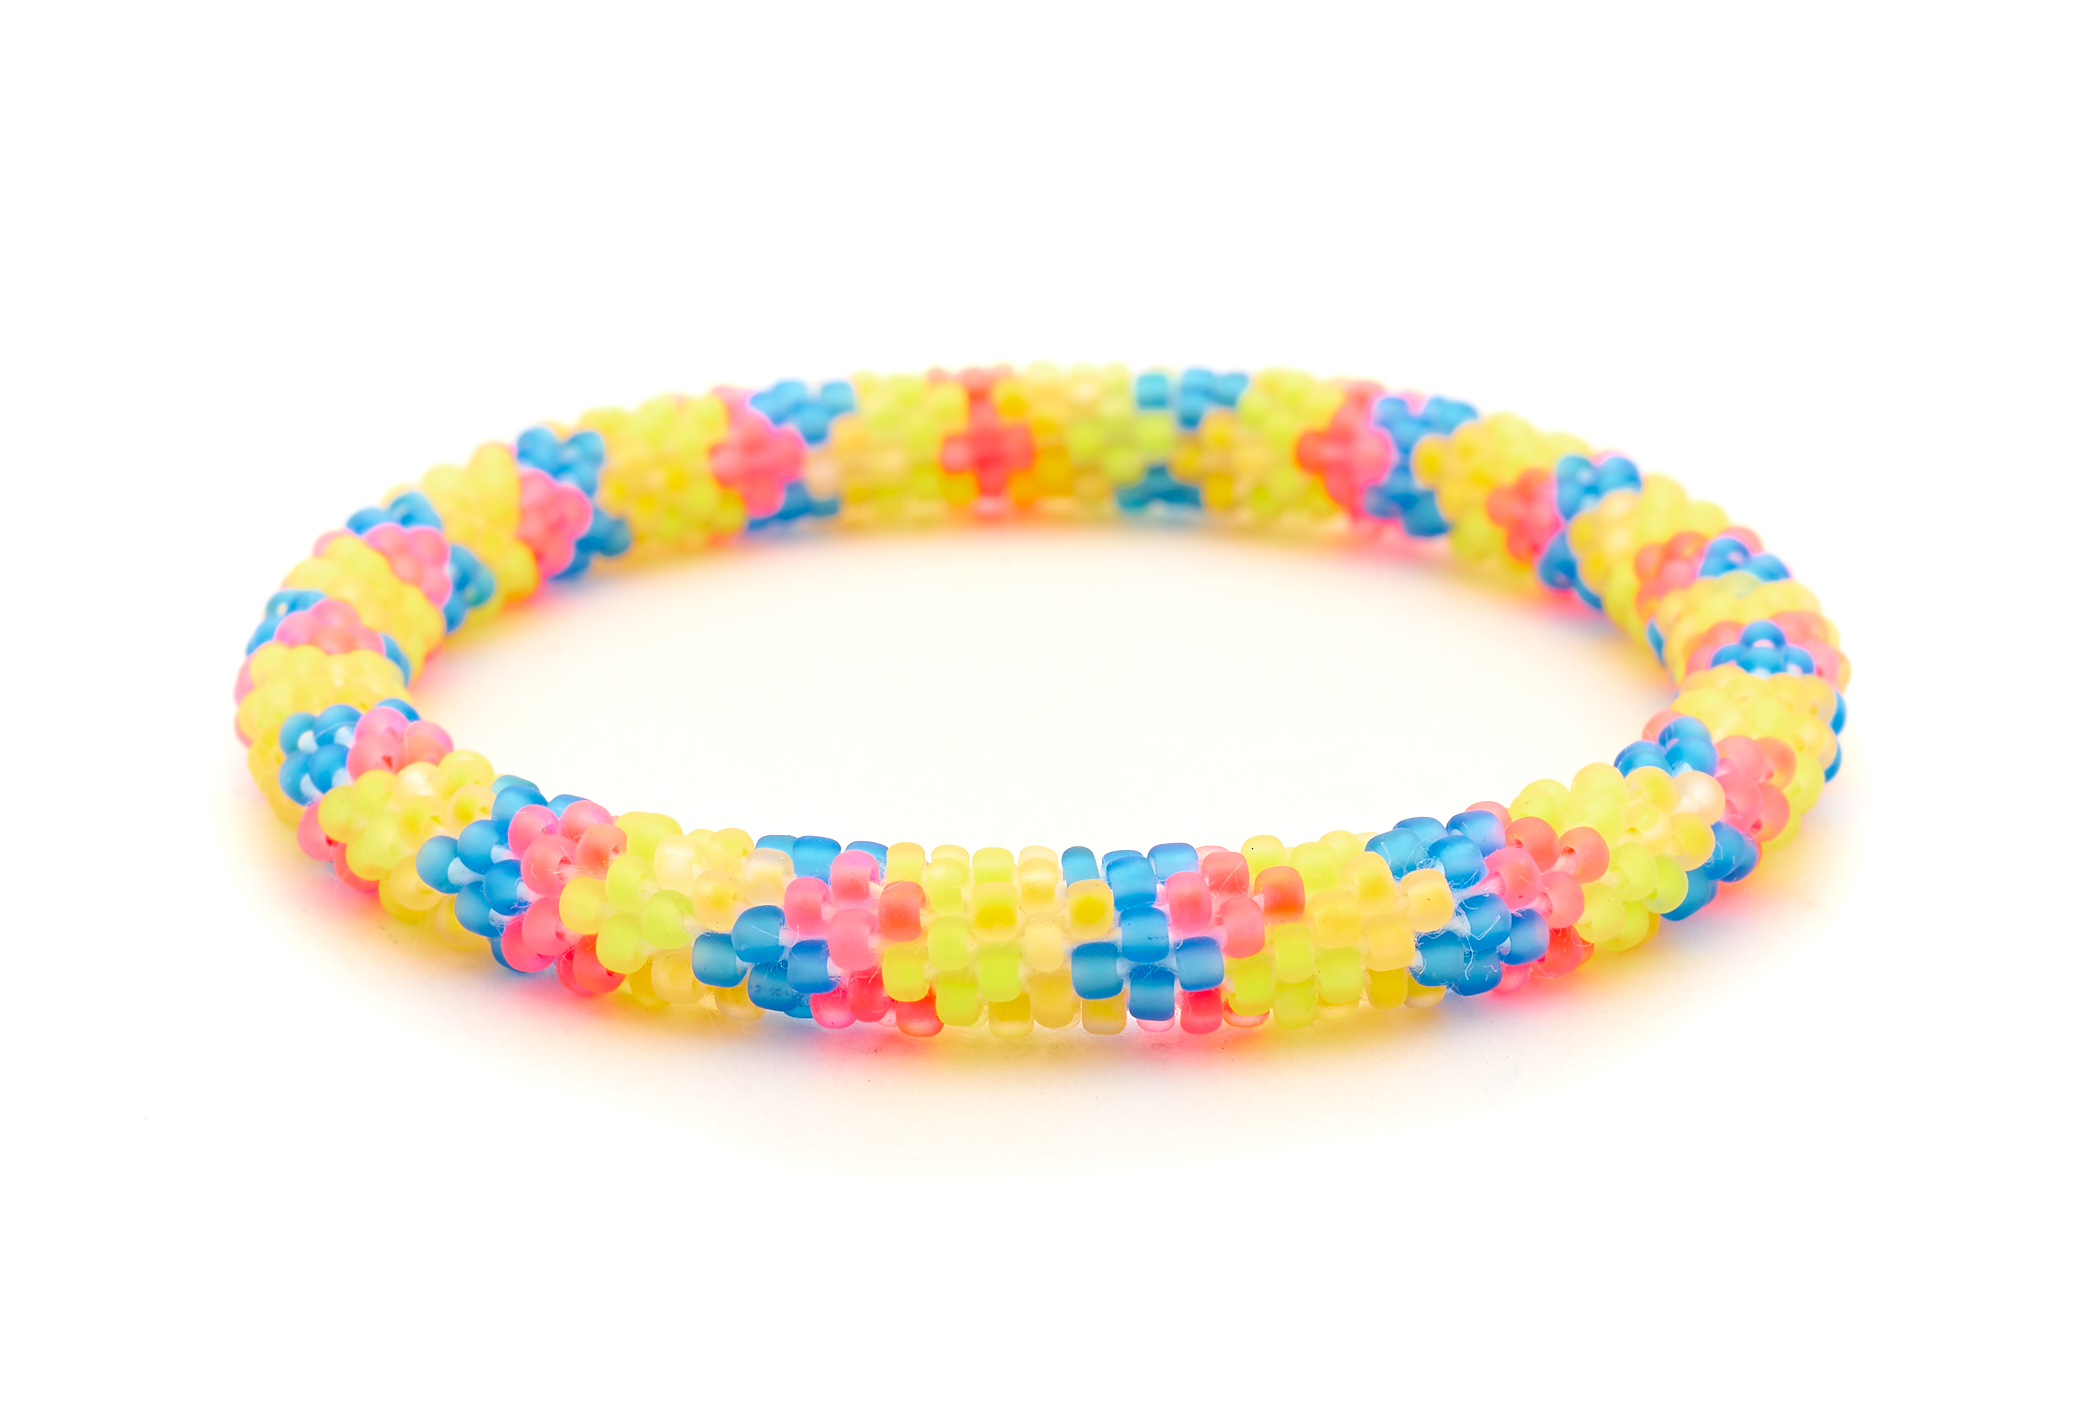 Sashka Co. Extended 8" Bracelet Matte Neon Pink / Orange / Blue / Yellow Neon Dreamcatcher Bracelet - Extended 8"